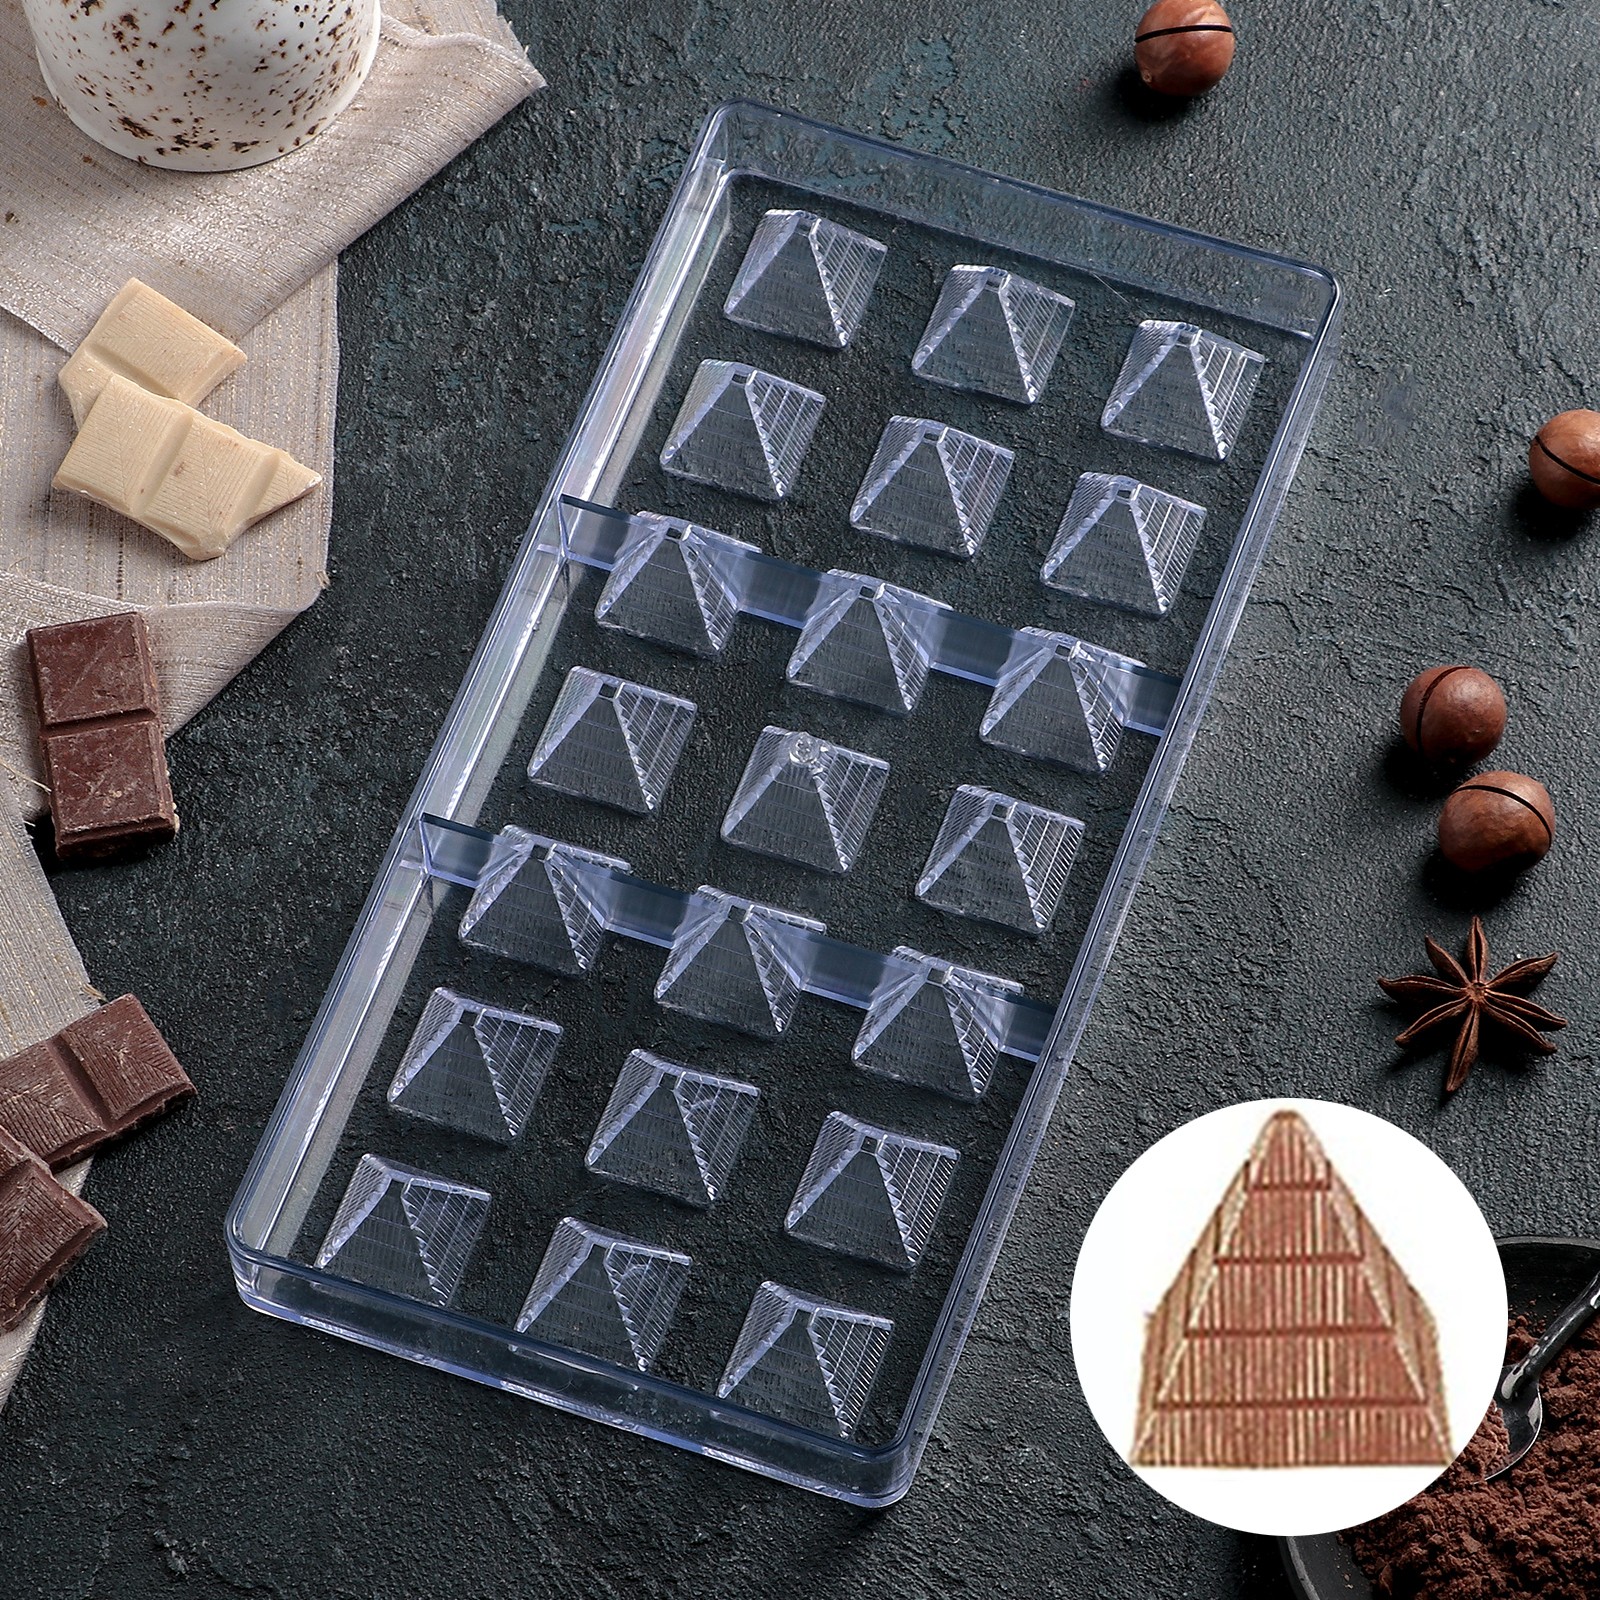 Шоколадные формы купить. Форма для конфет поликарбонатная 21 ячейка. Поликарбонатная форма для конфет "Комильфо" 21 ячейка. Форма поликарбонат для шоколада пирамида. Формы для шоколадных конфет поликарбонатные.